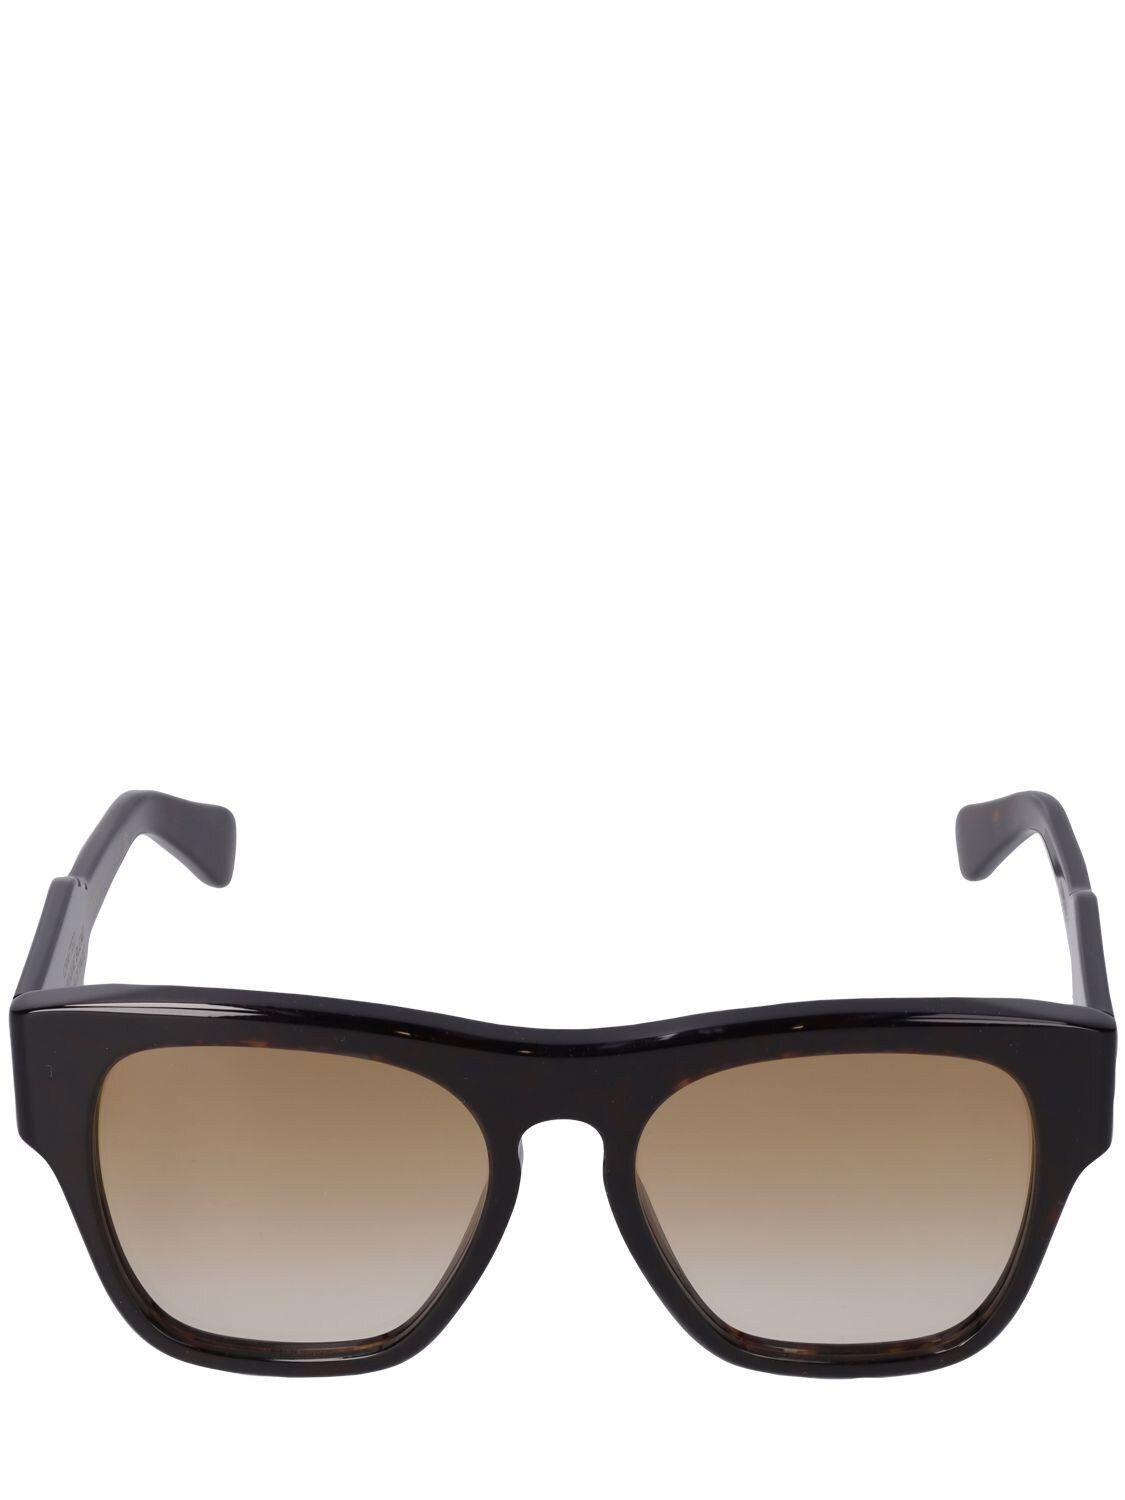 Chloé Reace Squared Bio-acetate Sunglasses in Black | Lyst